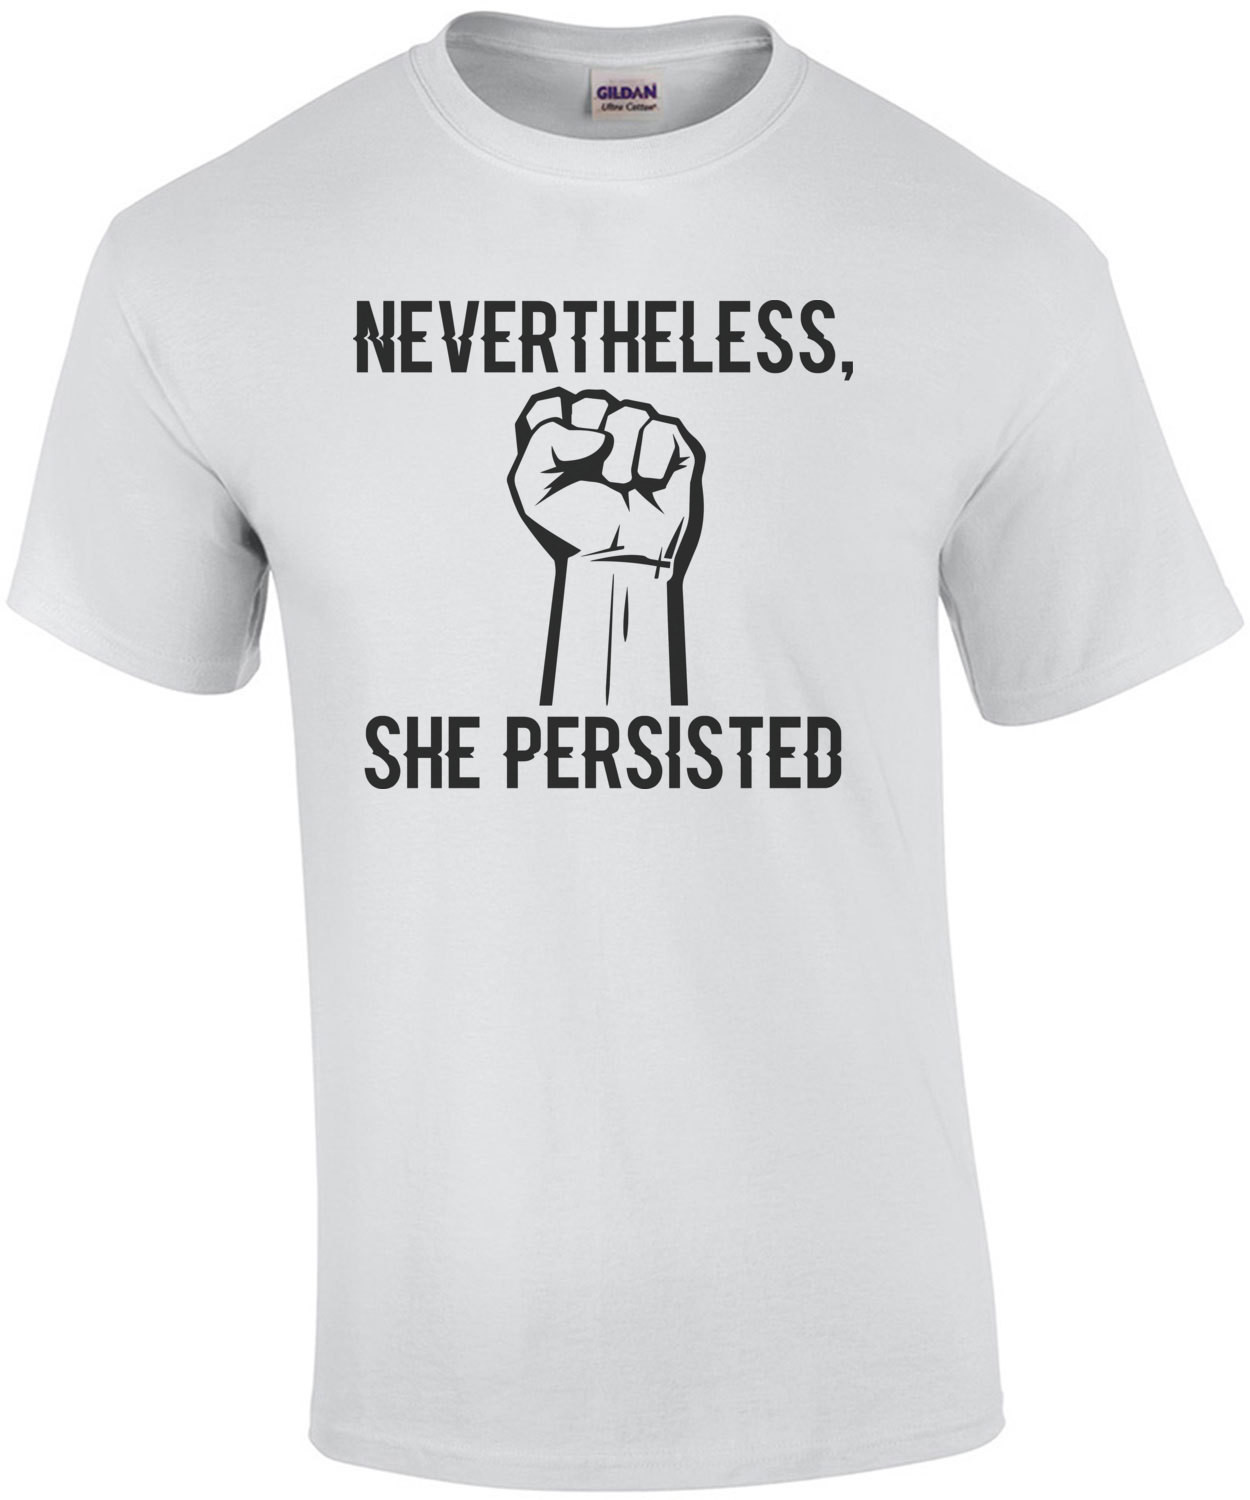 Nevertheless, she persisted - Kamala Harris t-shirt